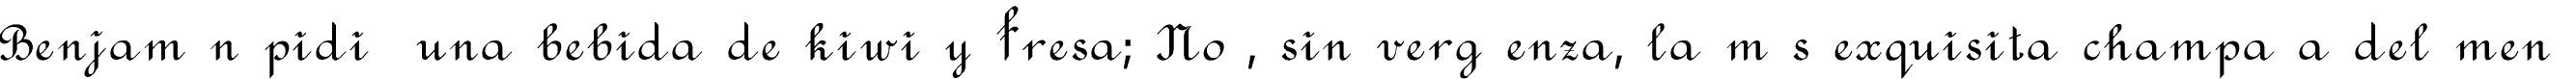 Пример написания шрифтом Rondo текста на испанском